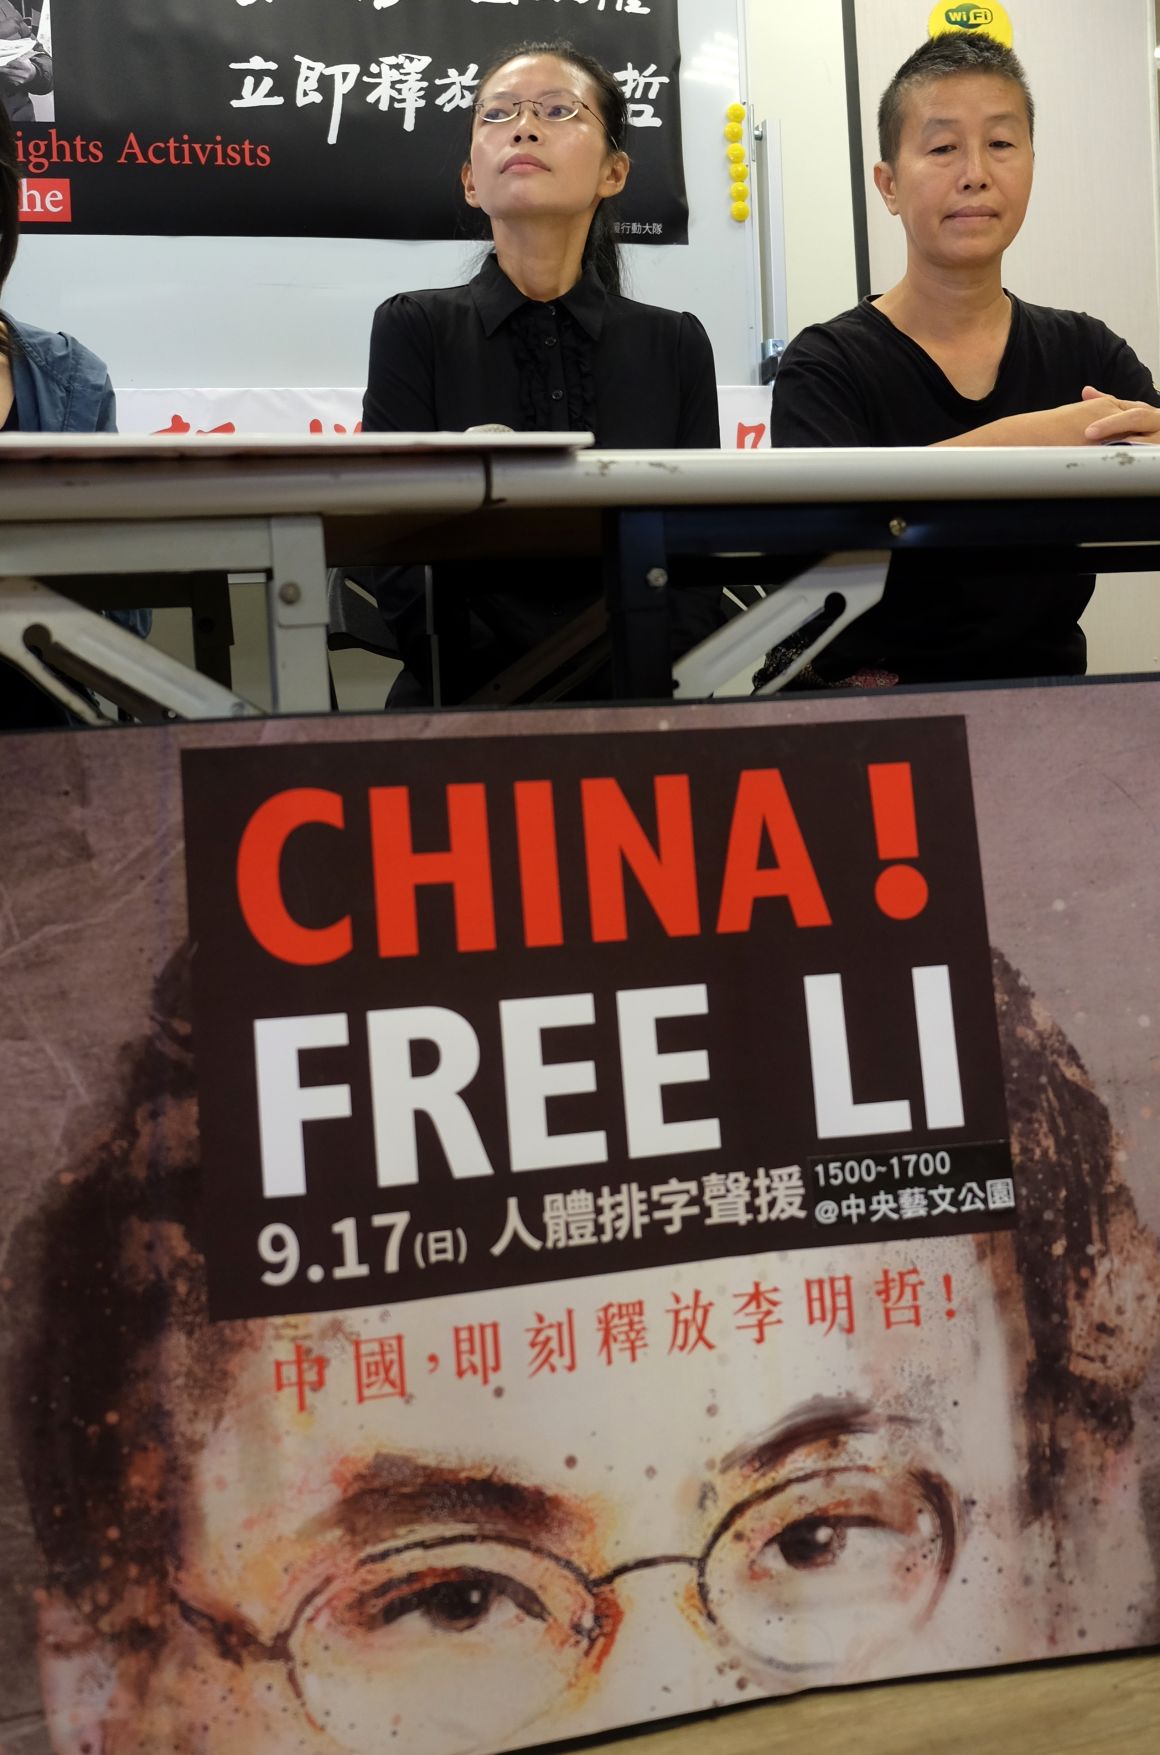 Li Ming-csö felesége az aktivista szabadságát követeli.Fotó: SAM YEH/AFP